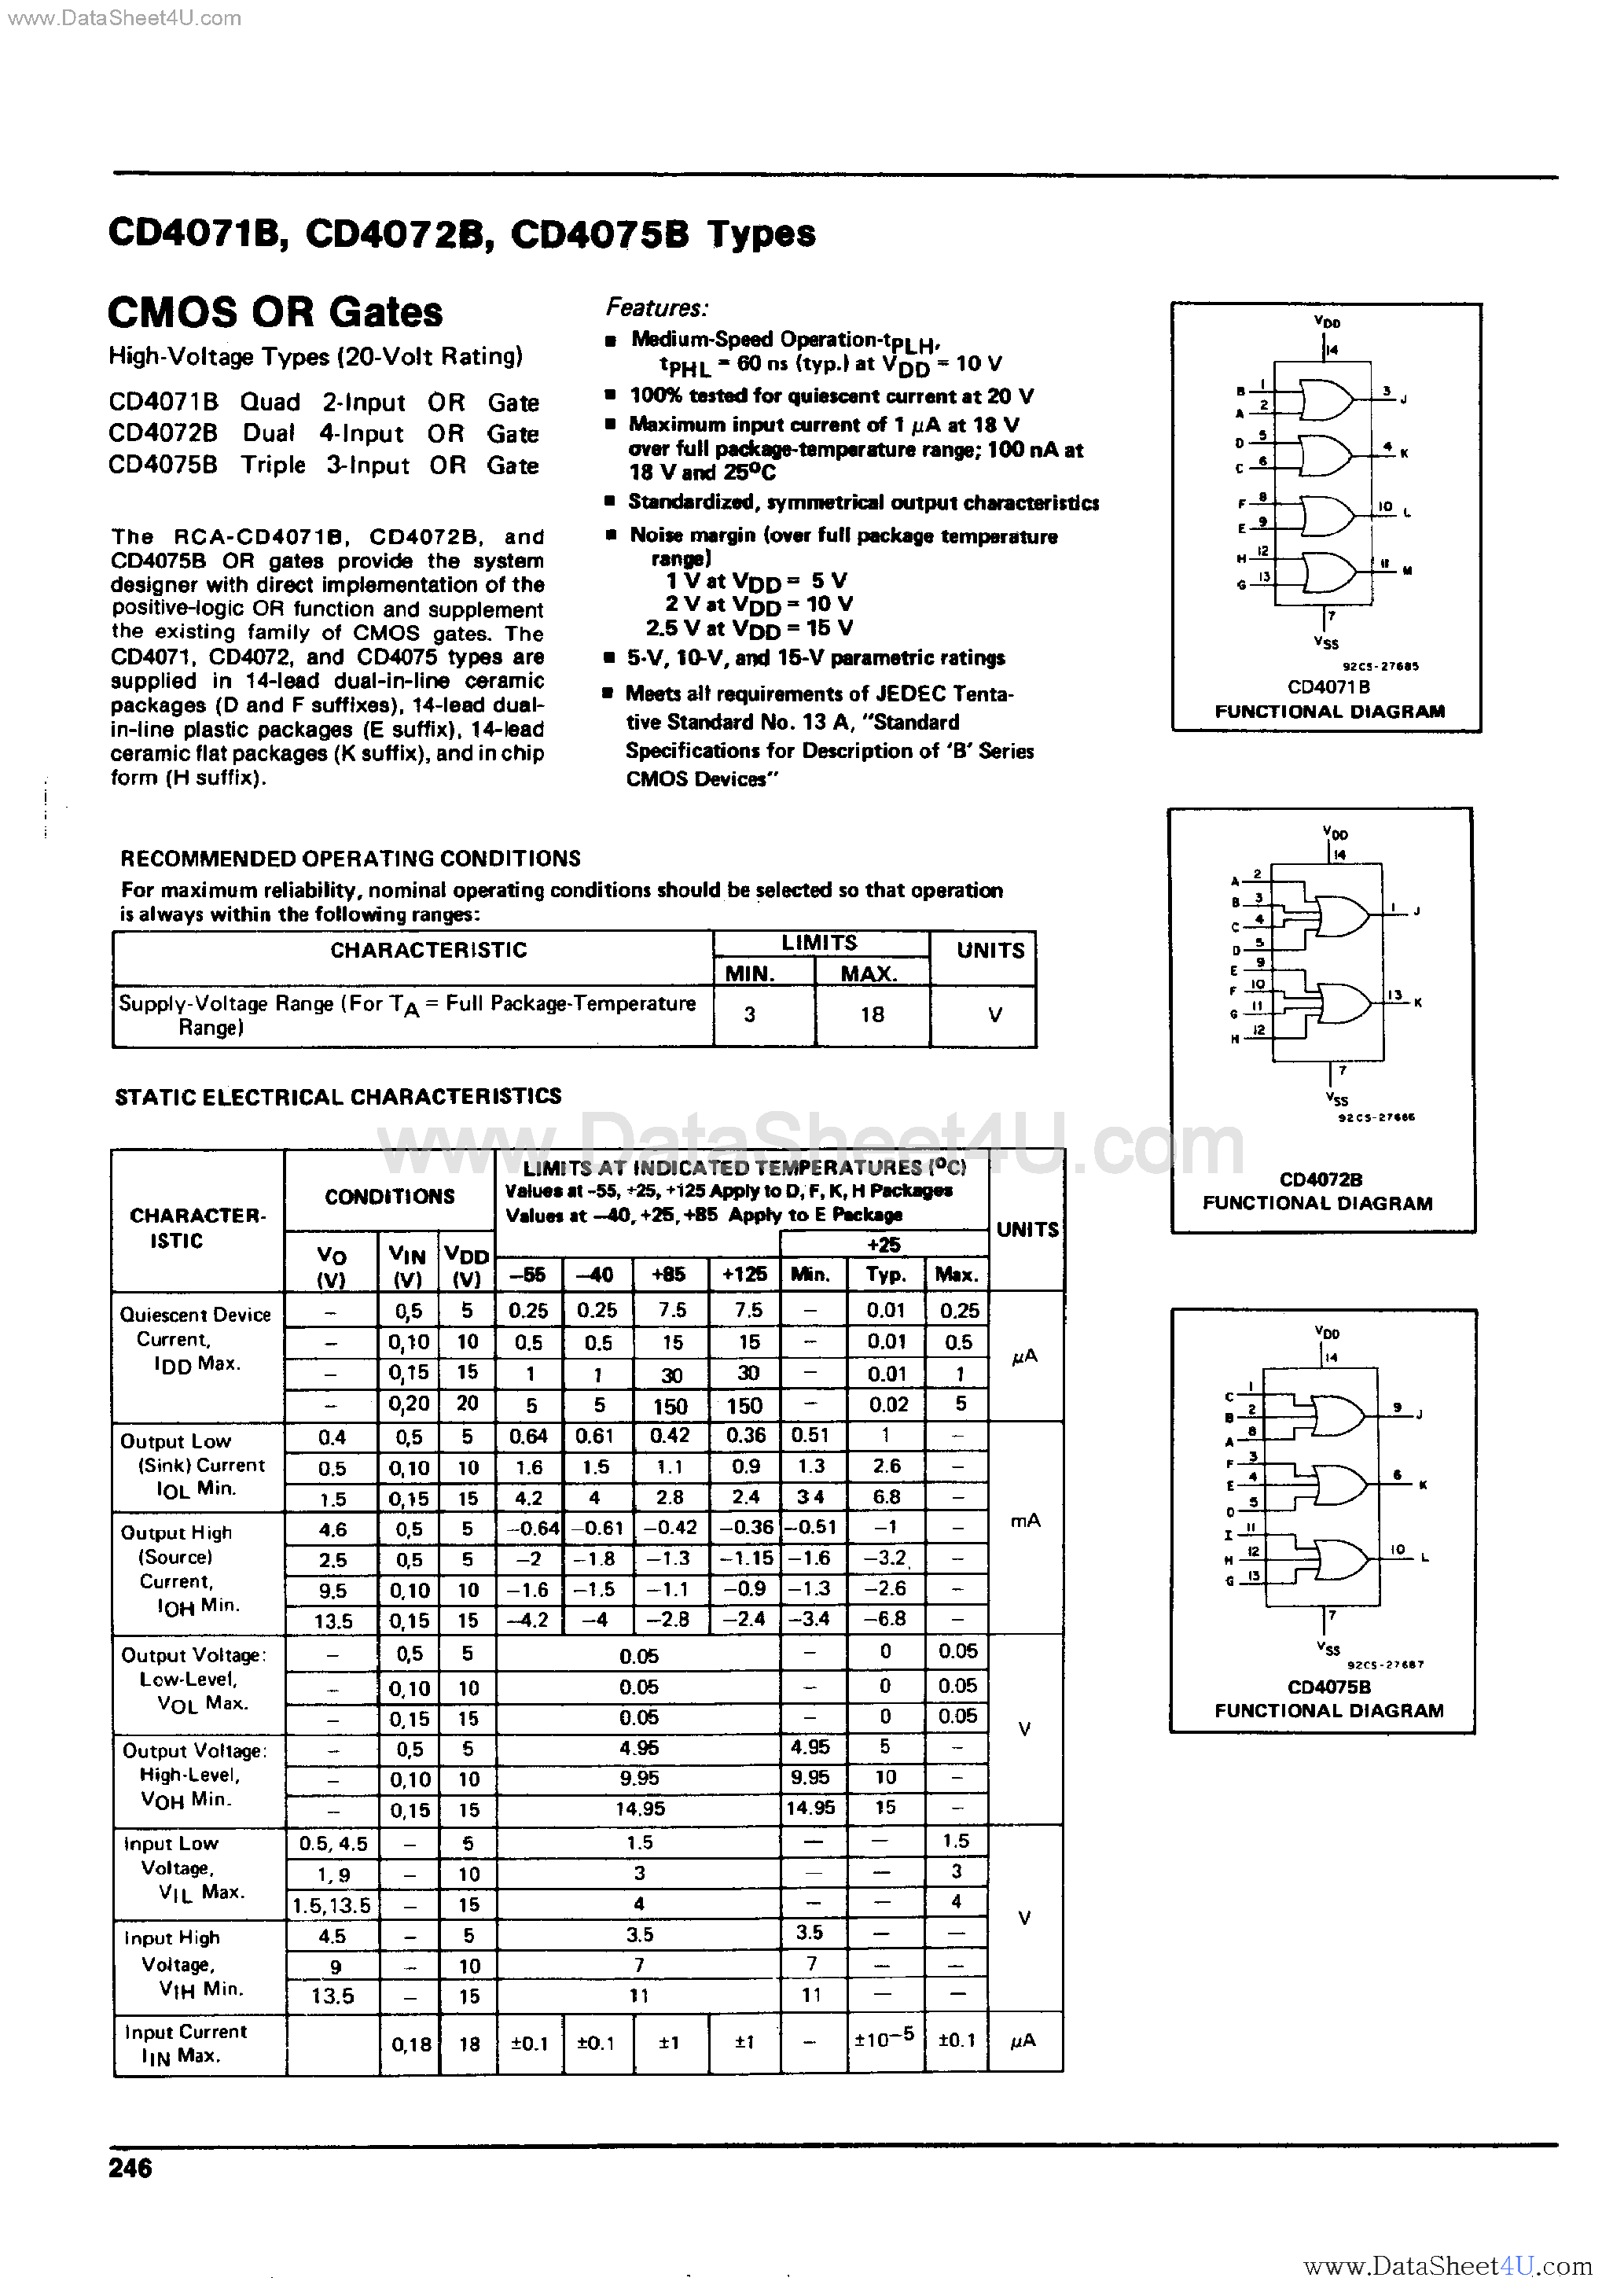 Datasheet CD4071B - (CD4071B - CD4075B) CMOS OR Gates page 1